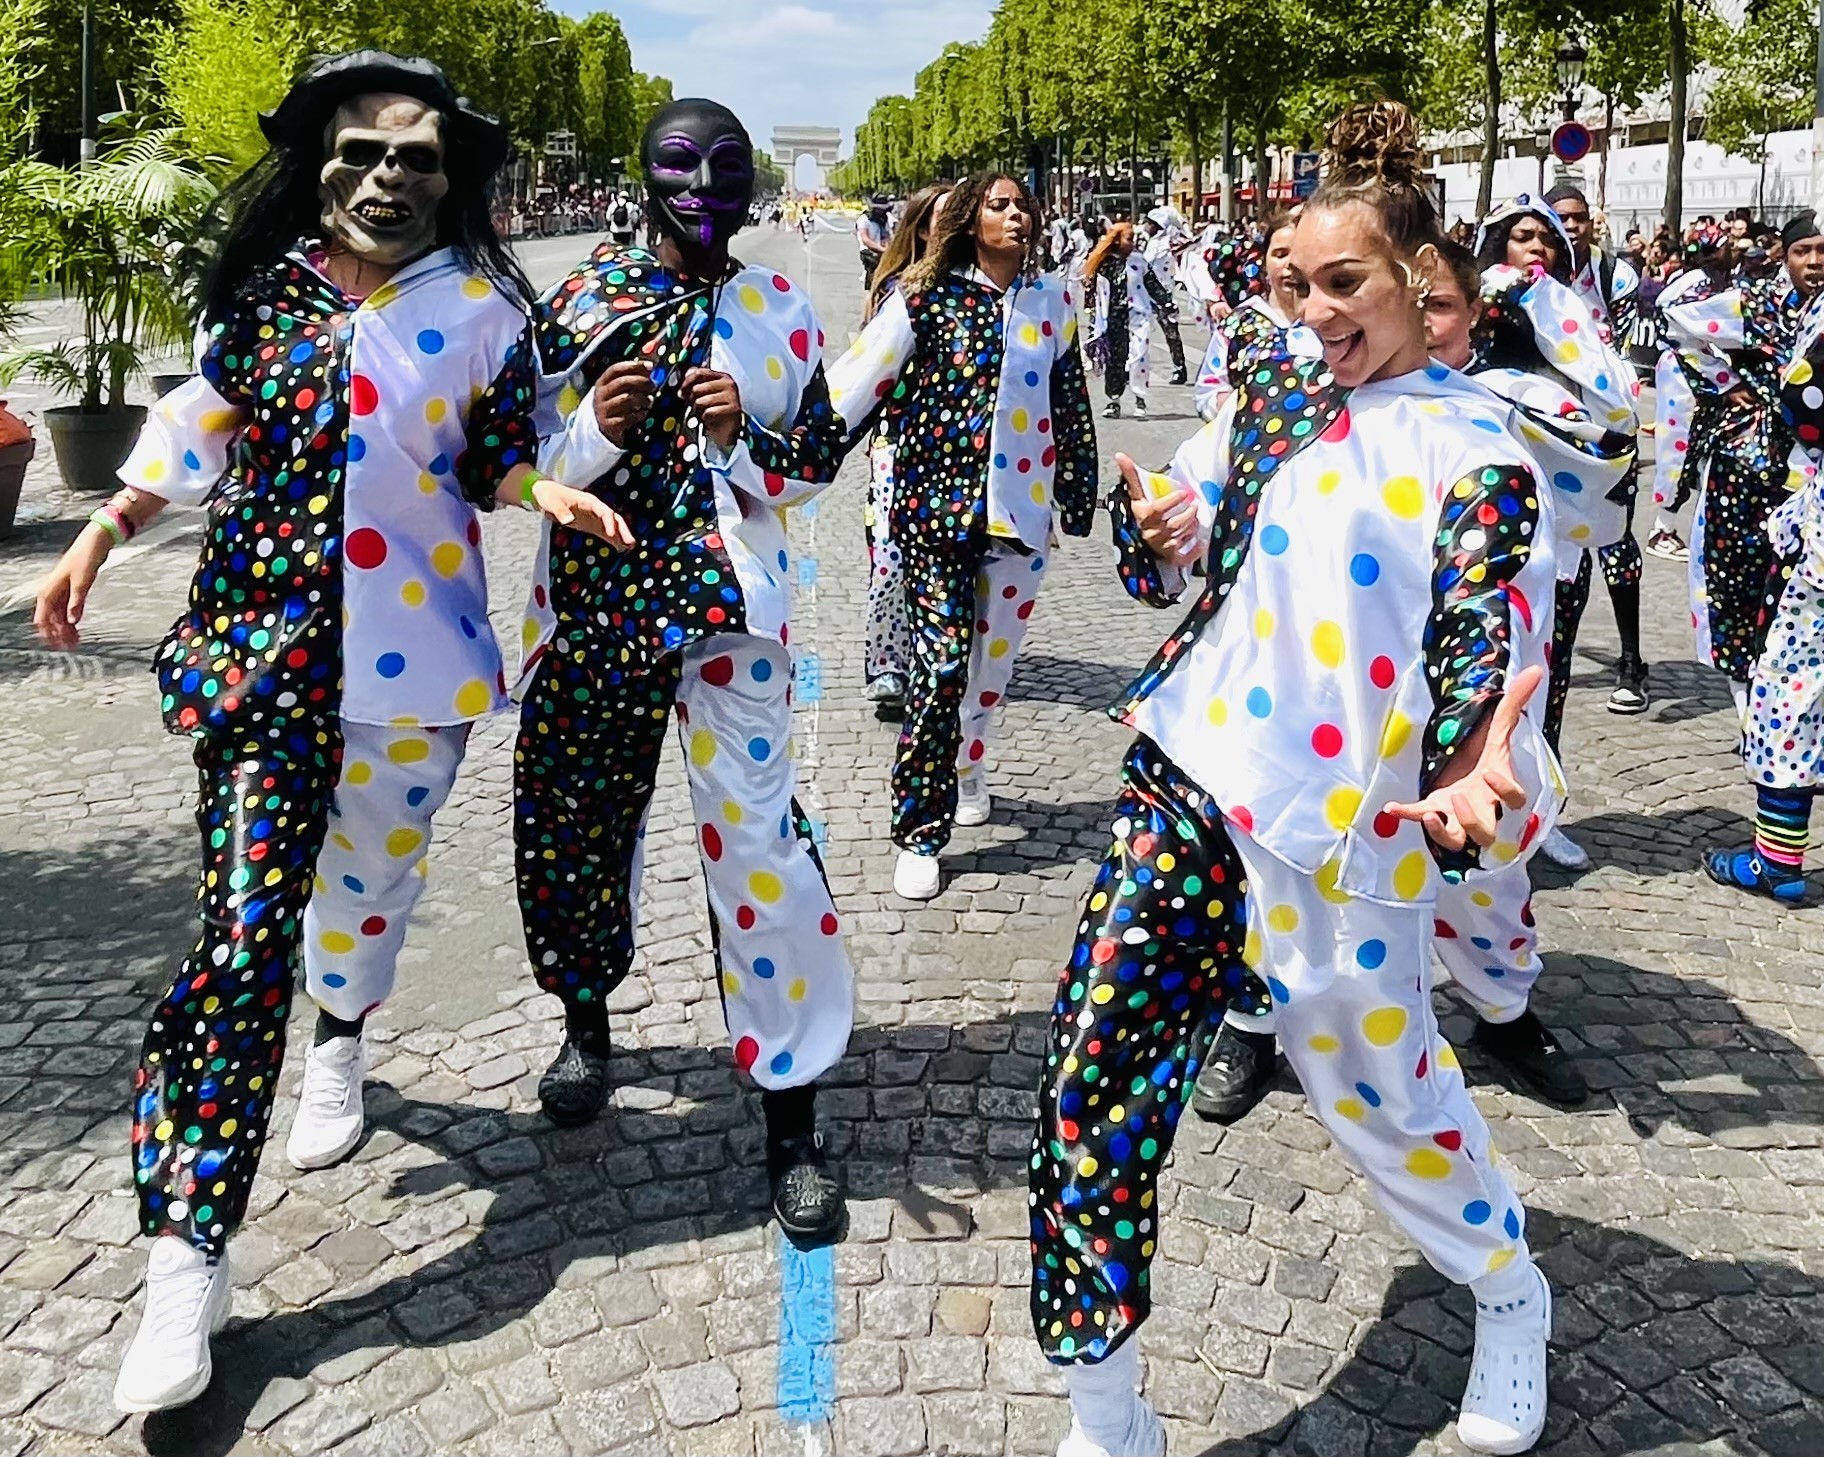     Le Carnaval Tropical de Paris a apporté de la joie dans la capitale

